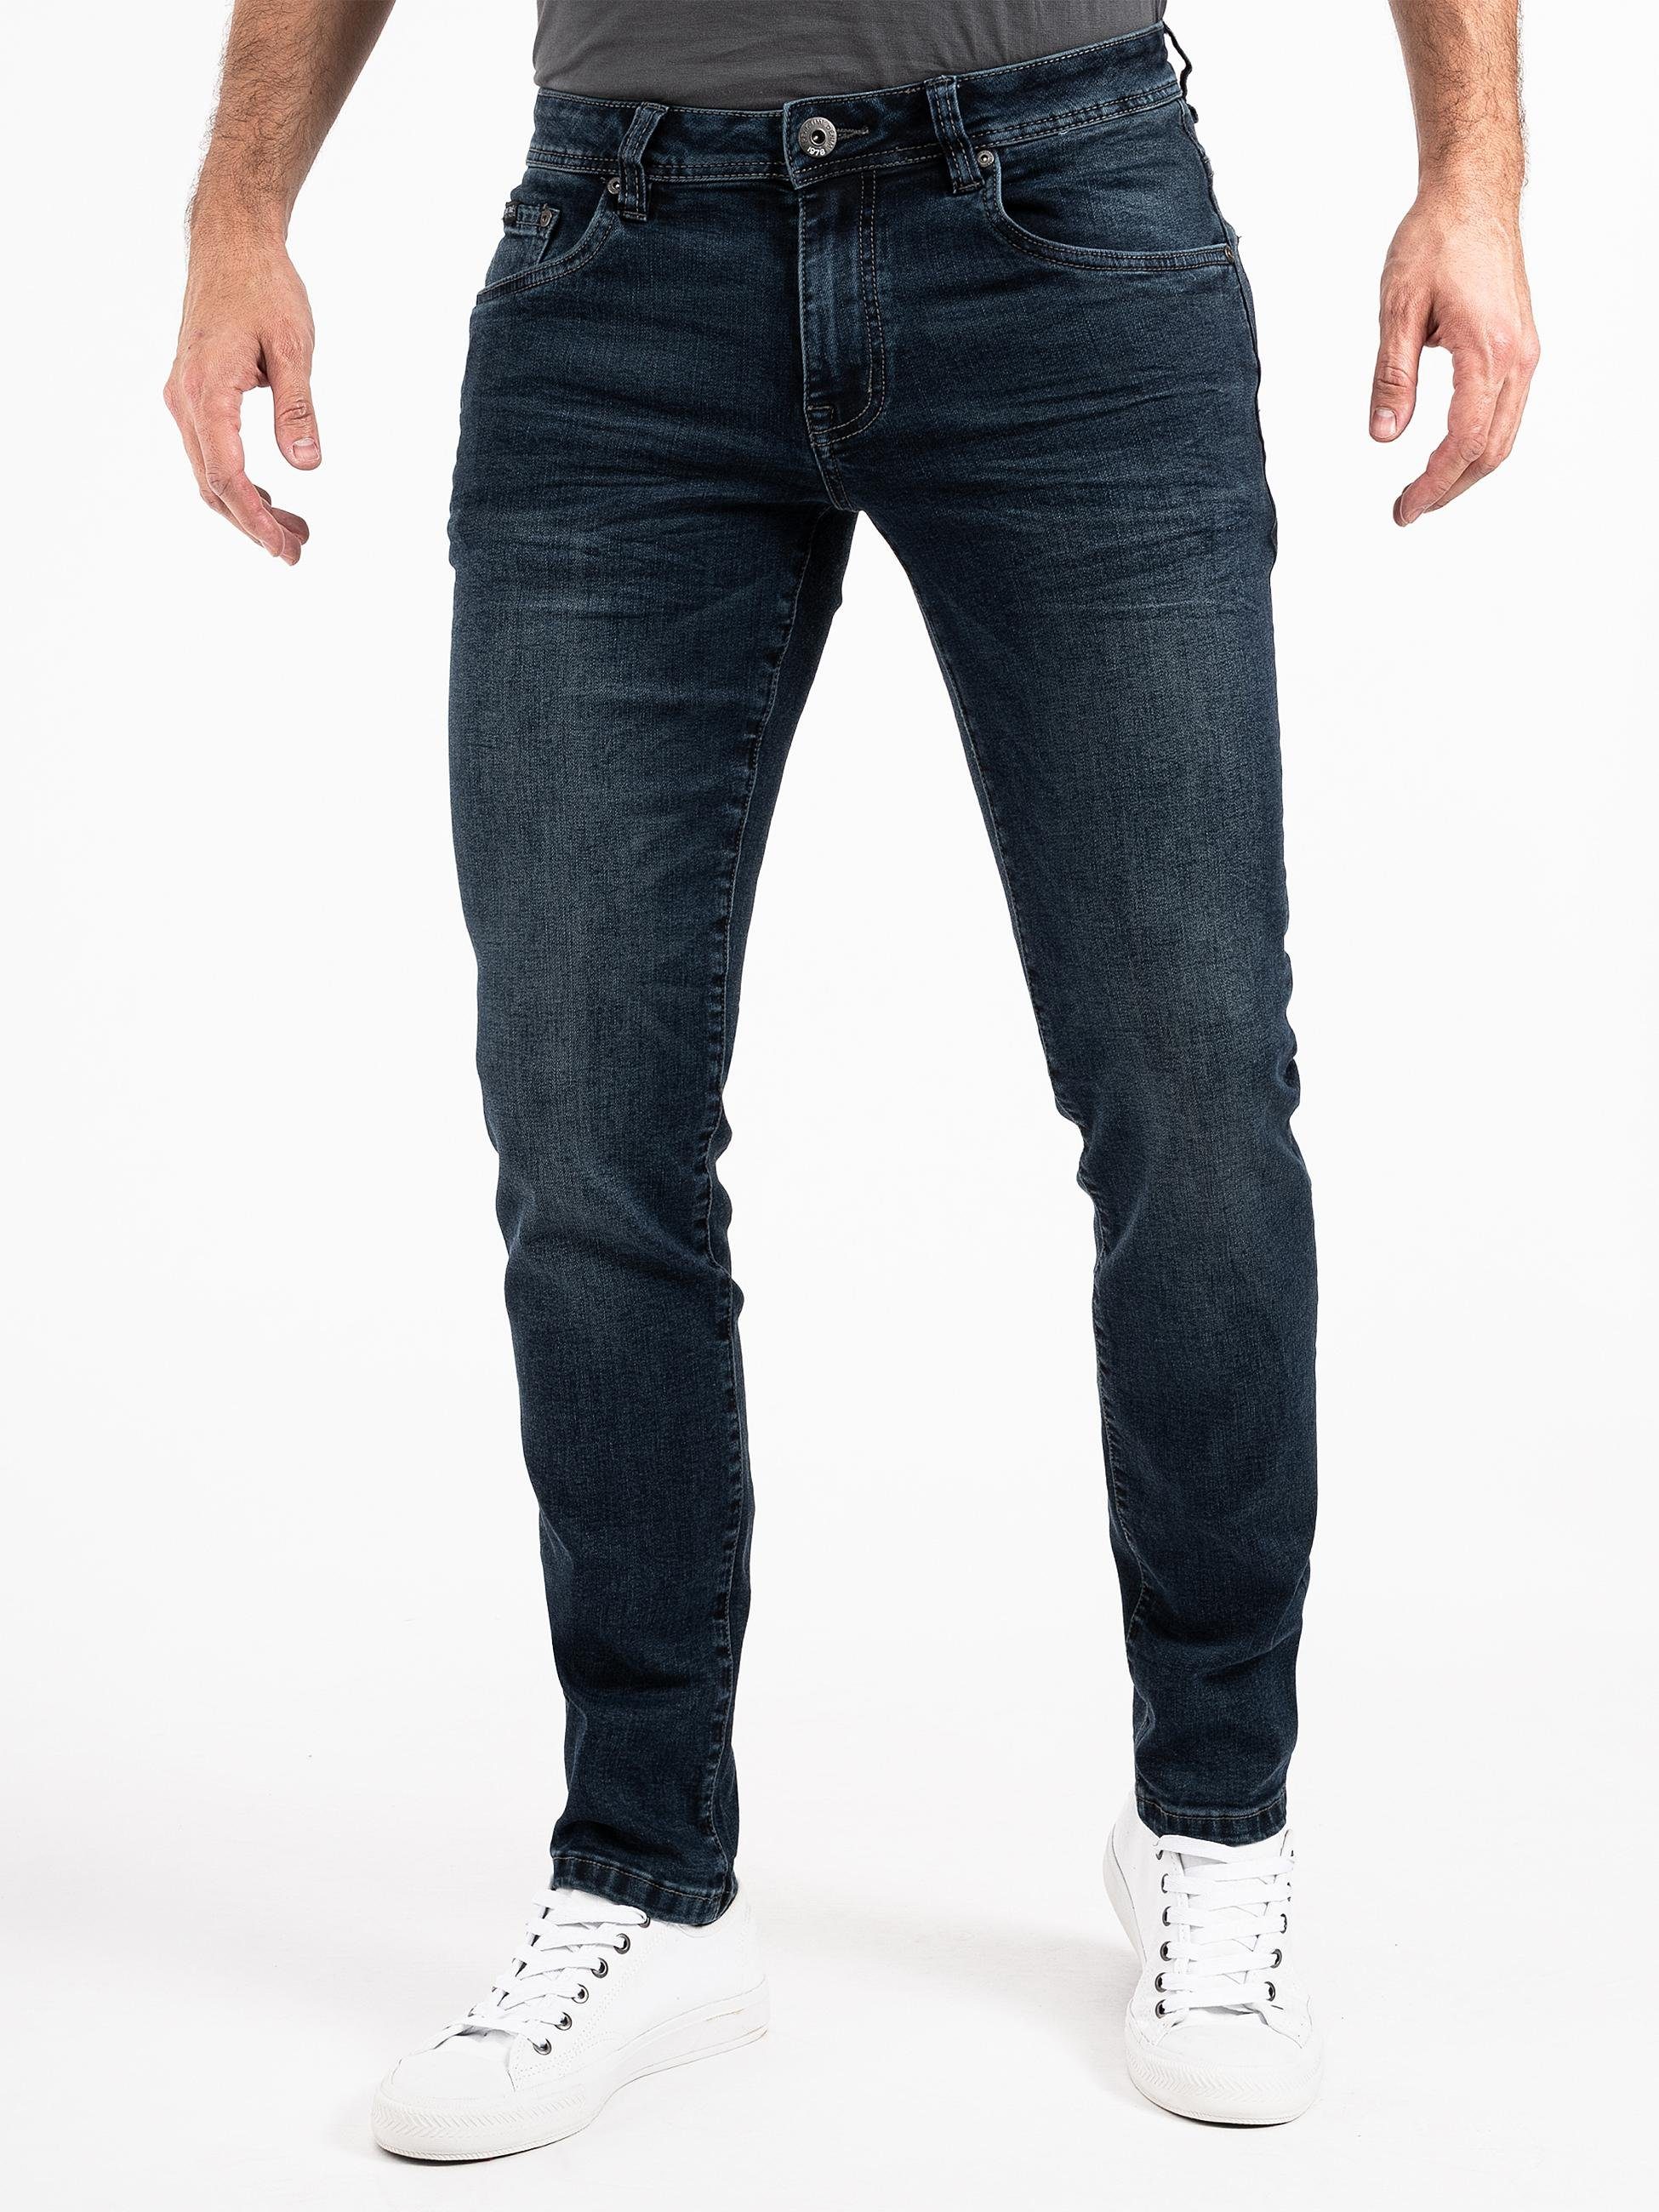 PEAK TIME Slim-fit-Jeans Mailand Herren Jeans mit super hohem Stretch-Anteil darkblue